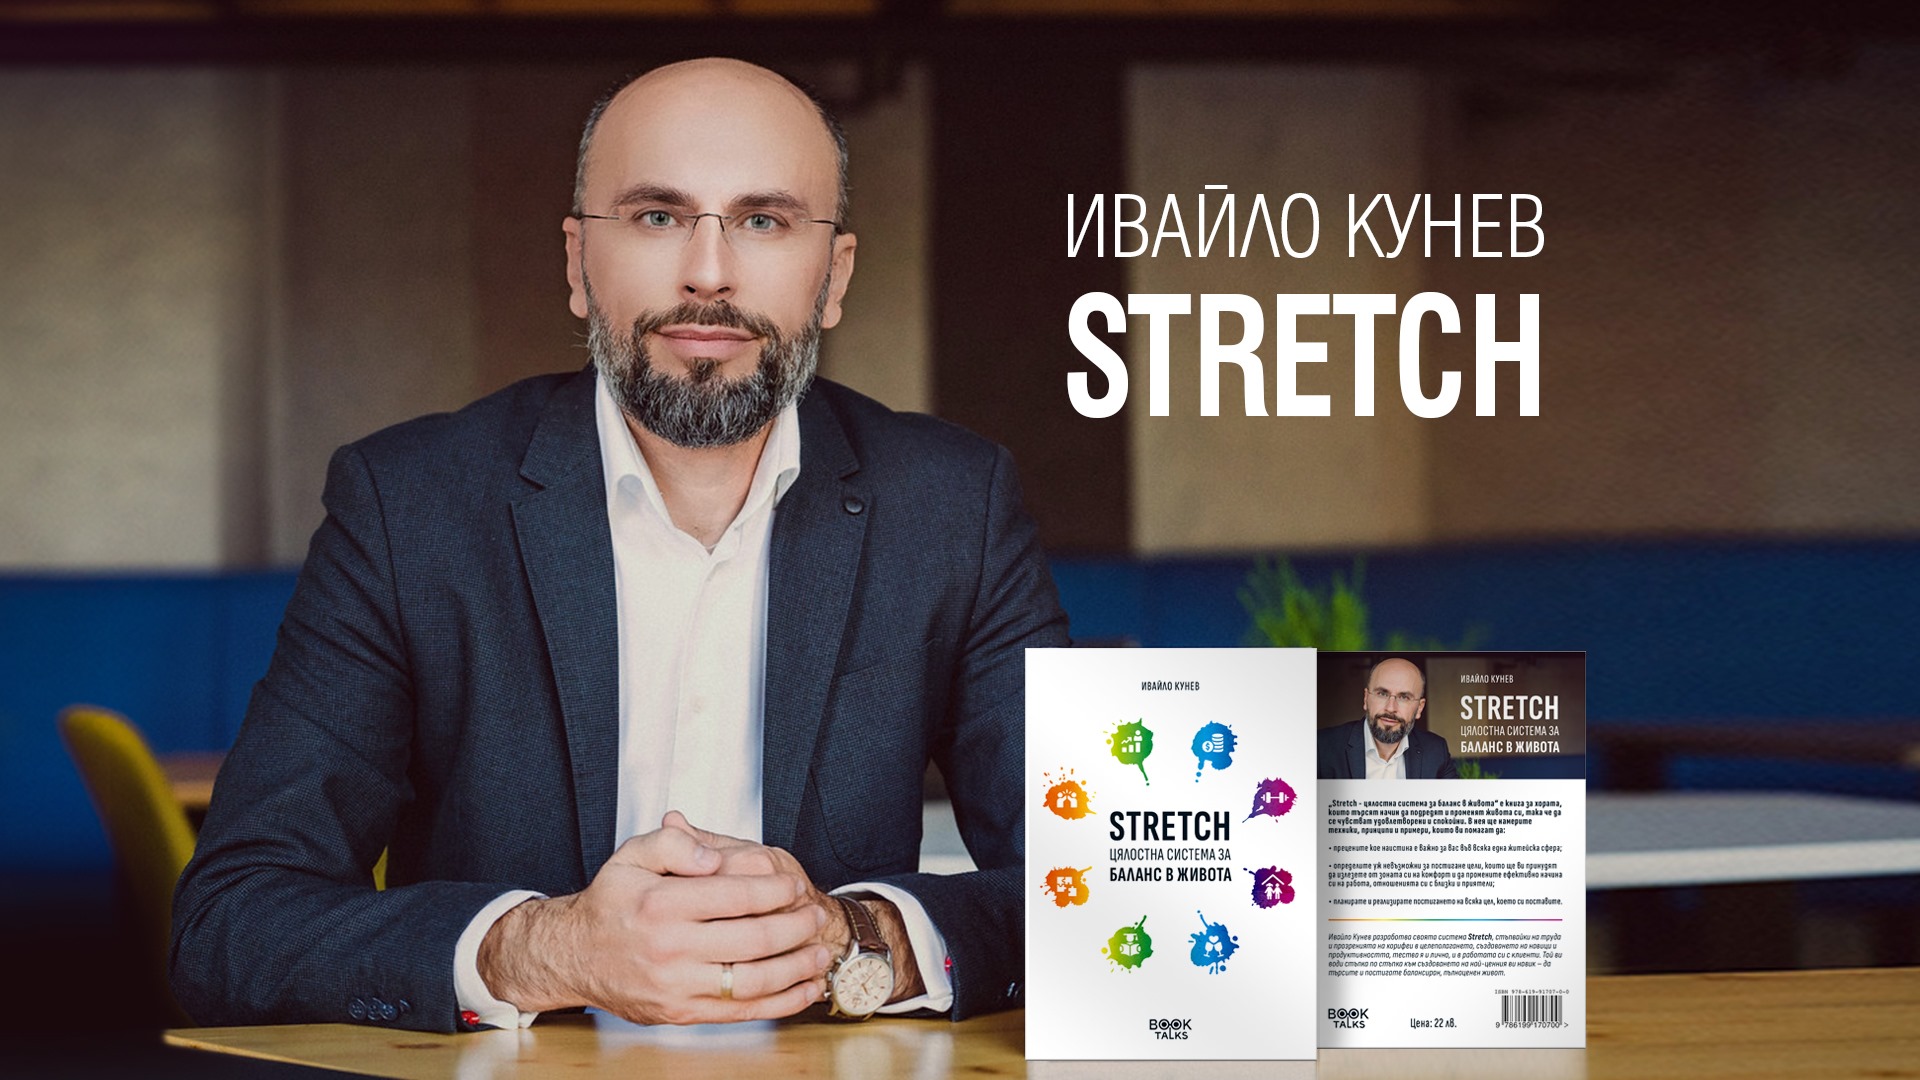 Представяне на новата книга Stretch на Ивайло Кунев